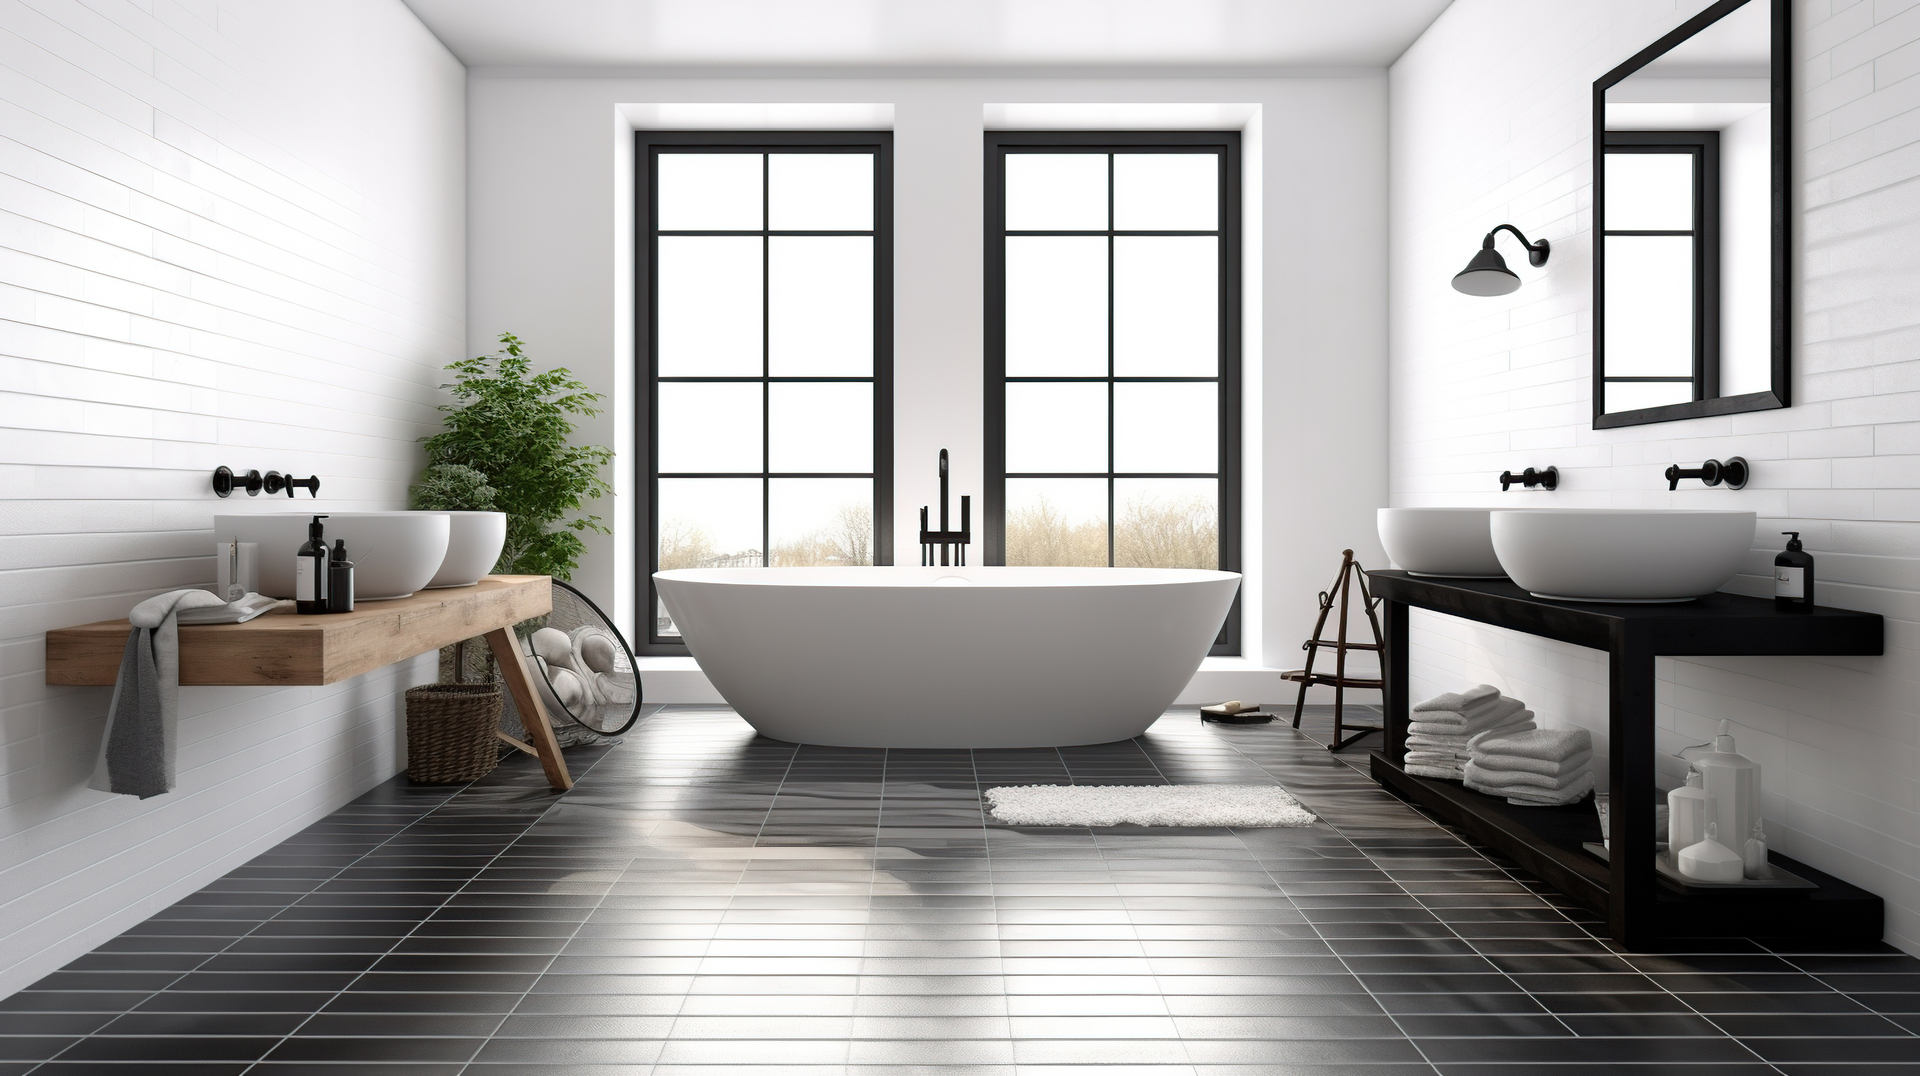 Prezentowany obrazek ukazuje minimalistyczną łazienkę o wyjątkowym uroku, gdzie czarna podłoga pełni główną rolę, nadając wnętrzu eleganckiego kontrastu. Czarne tła doskonale podkreślają jasne elementy, takie jak białe umywalki i płytki, tworząc harmonijną równowagę kolorystyczną. Łazienka z czarną podłogą emanuje nowoczesnością i stylowym designem, idealnym dla osób poszukujących unikalnych rozwiązań aranżacyjnych